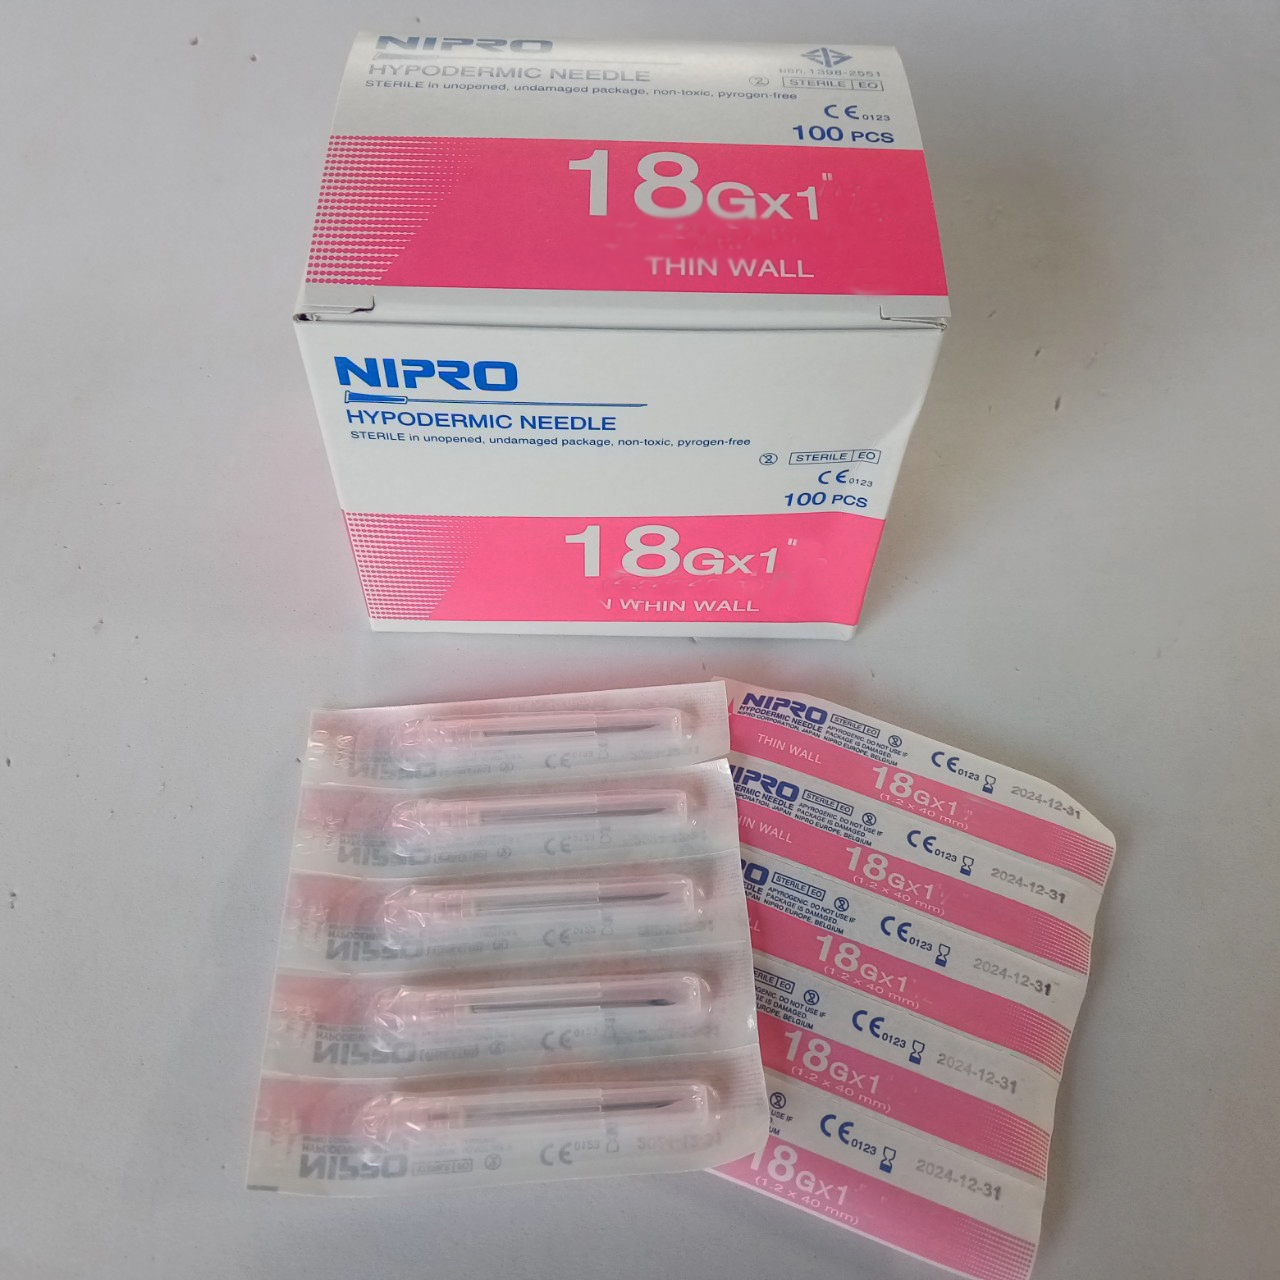 เข็มฉีดยา เบอร์ 18 g x 1 นิ้ว (1.2 x 25 mm) 1 กล่อง (100 ชิ้น)  NIPRO HYPODERMIC NEEDLE THIN WALL สำหรับฉีดยา วัคซีน น้ำเกลือ ใต้ผิวหนัง ใช้ในคน สัตว์เลี้ยง สุนัข แมว